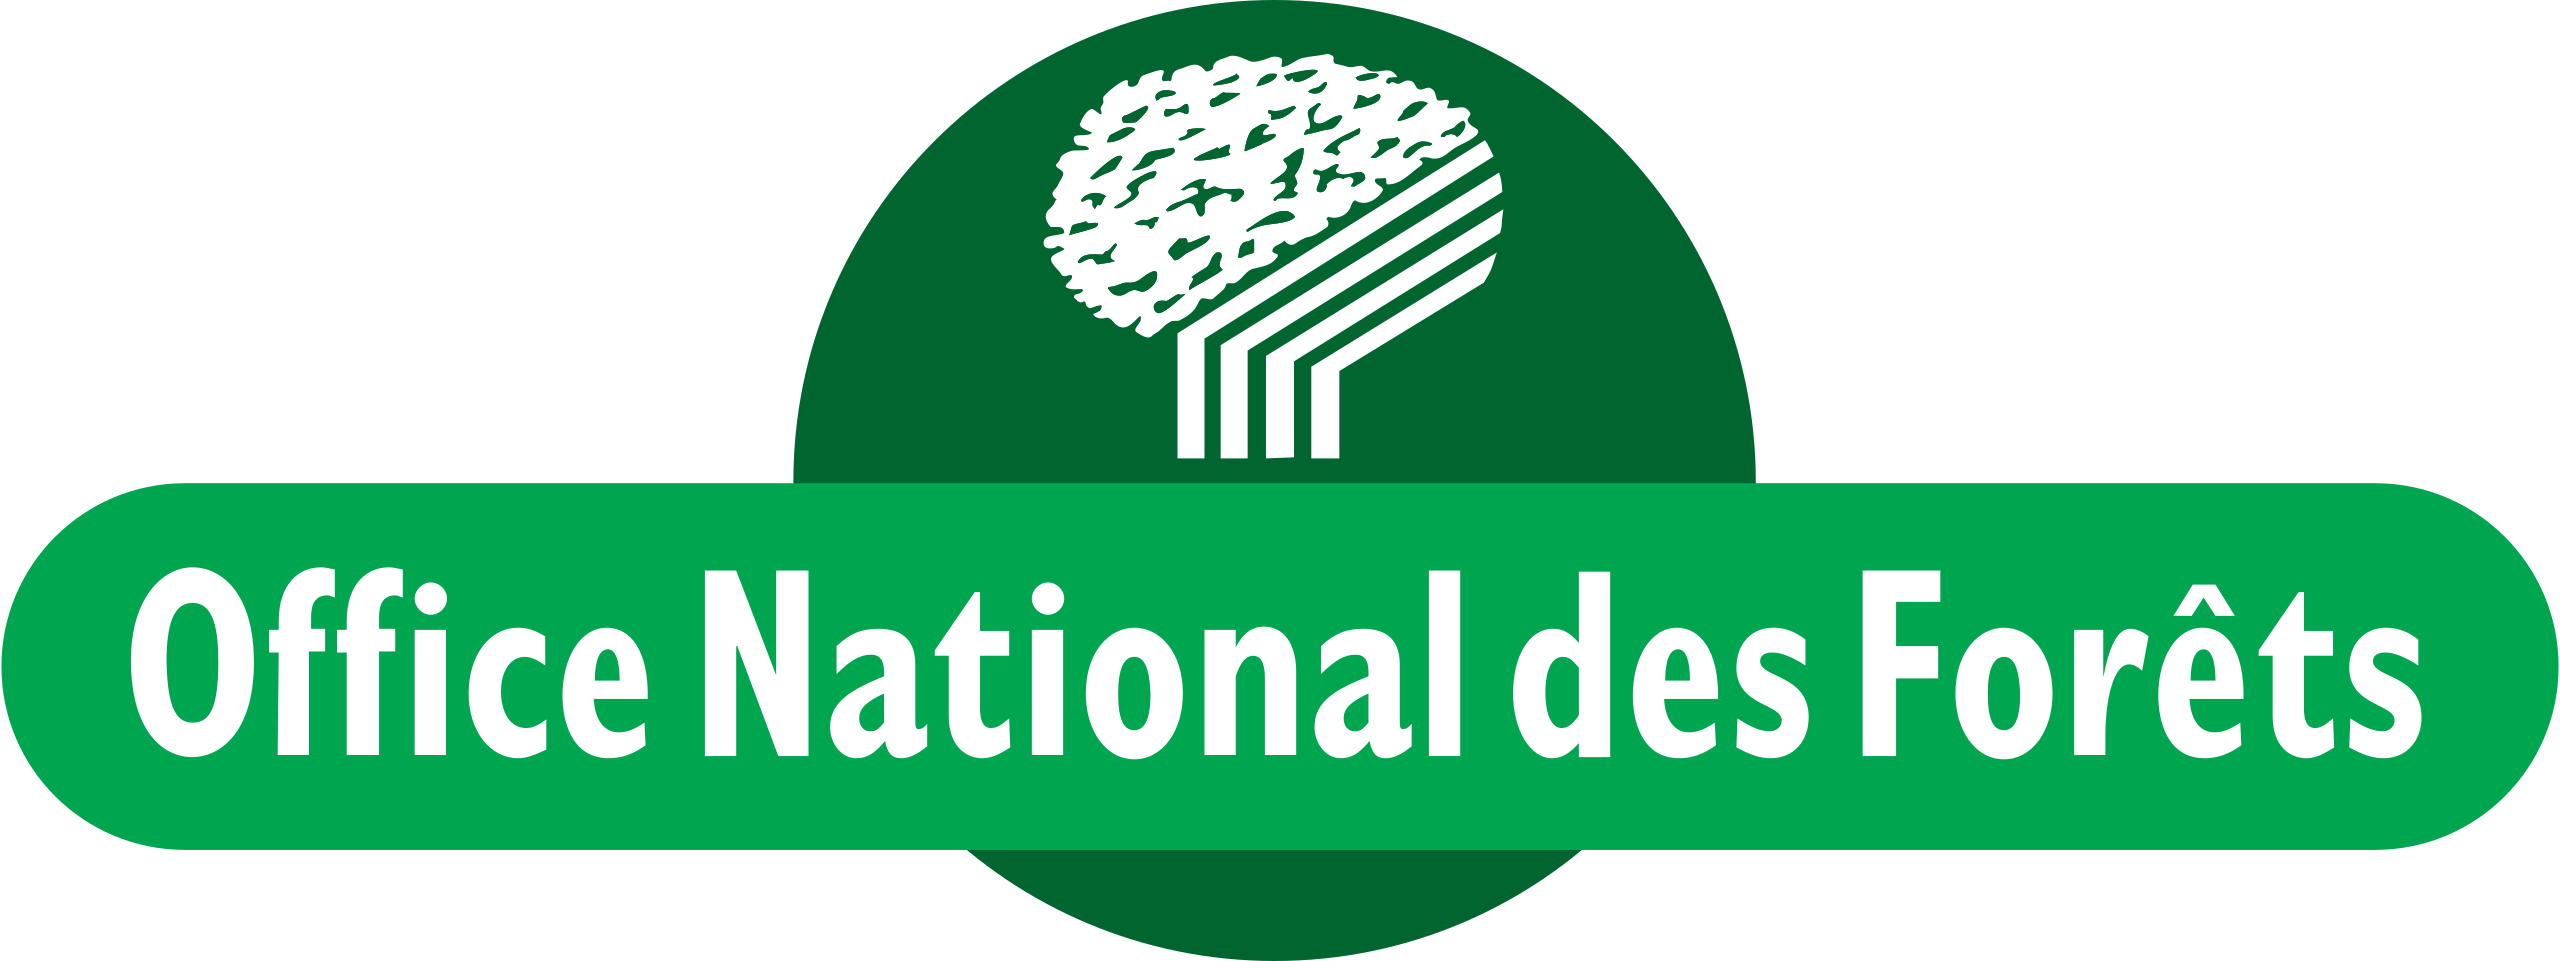 Office National des forêts logo